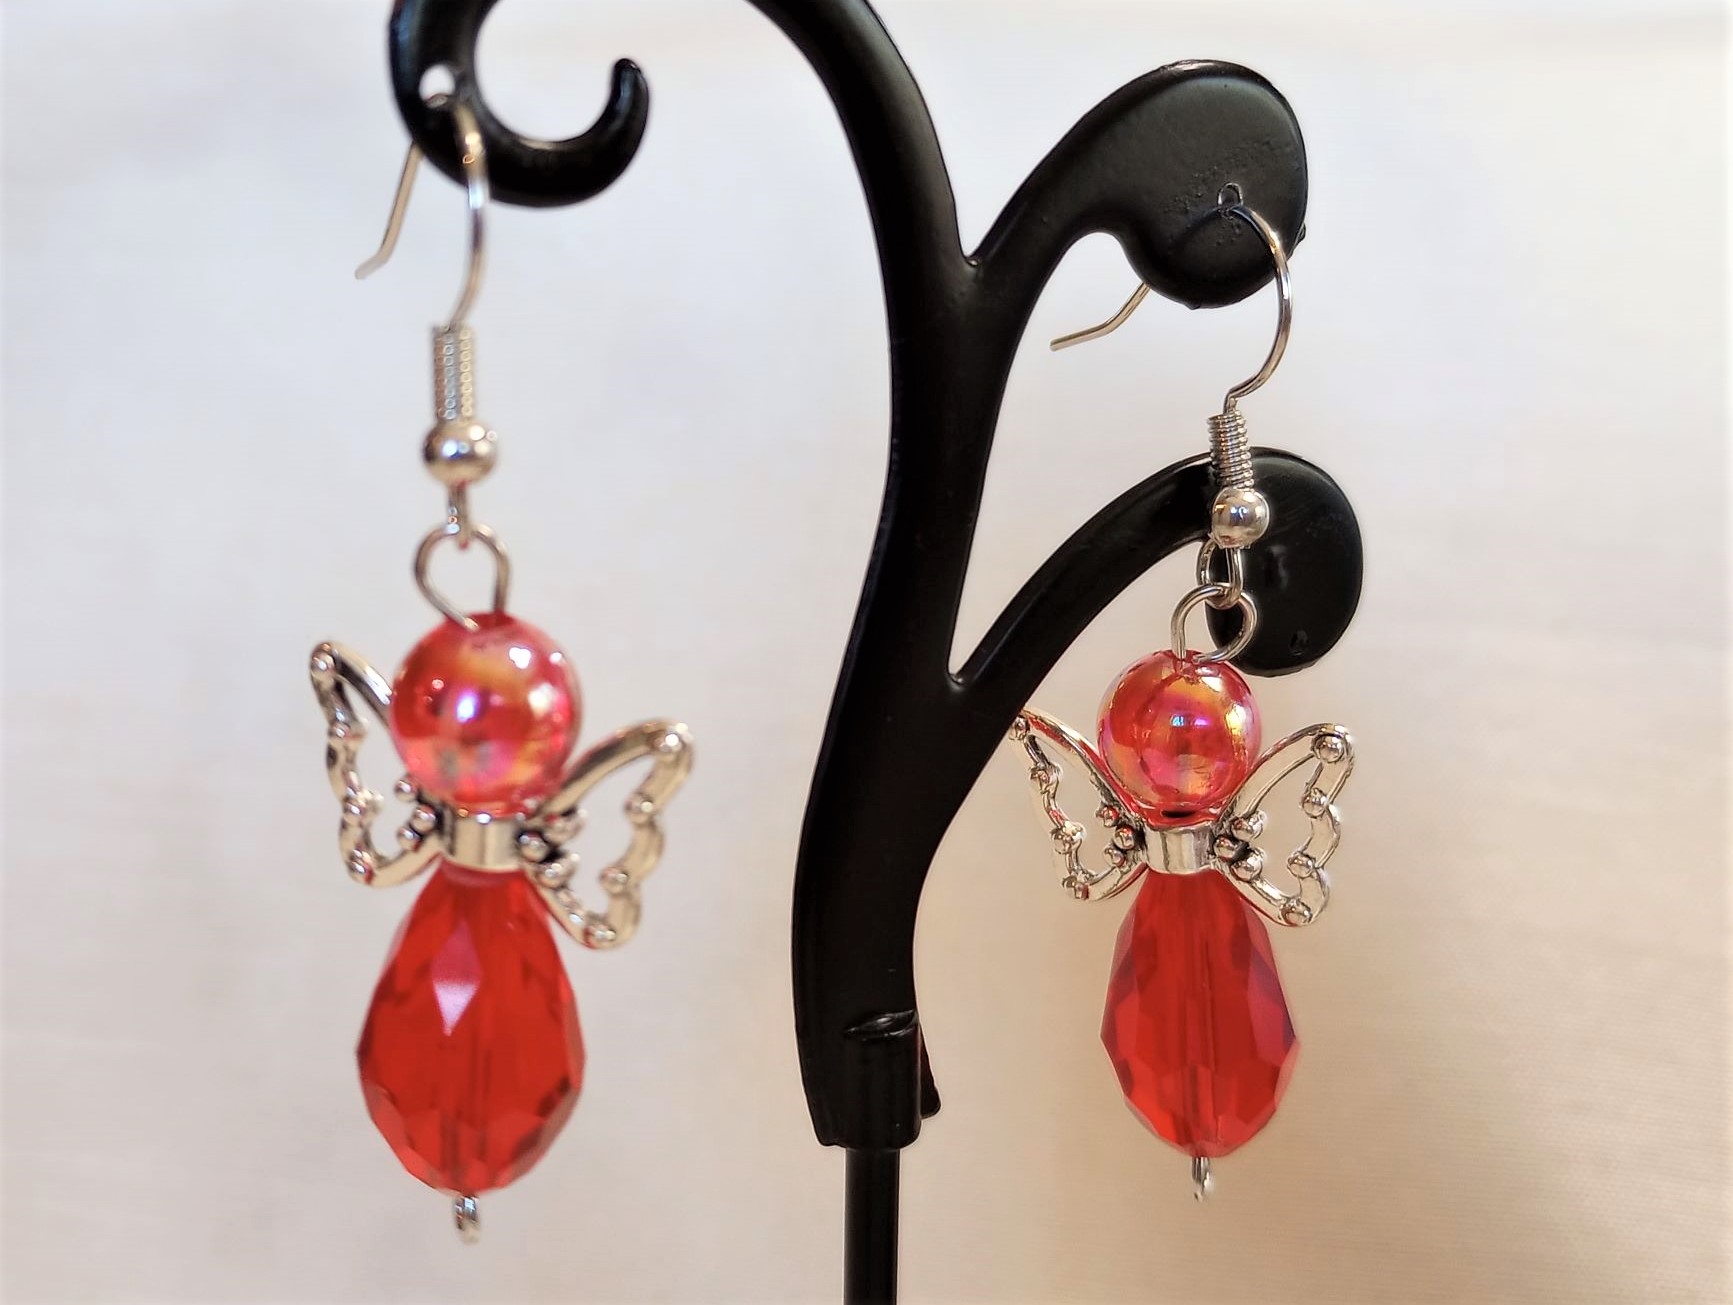 A – Red Butterfly Earrings